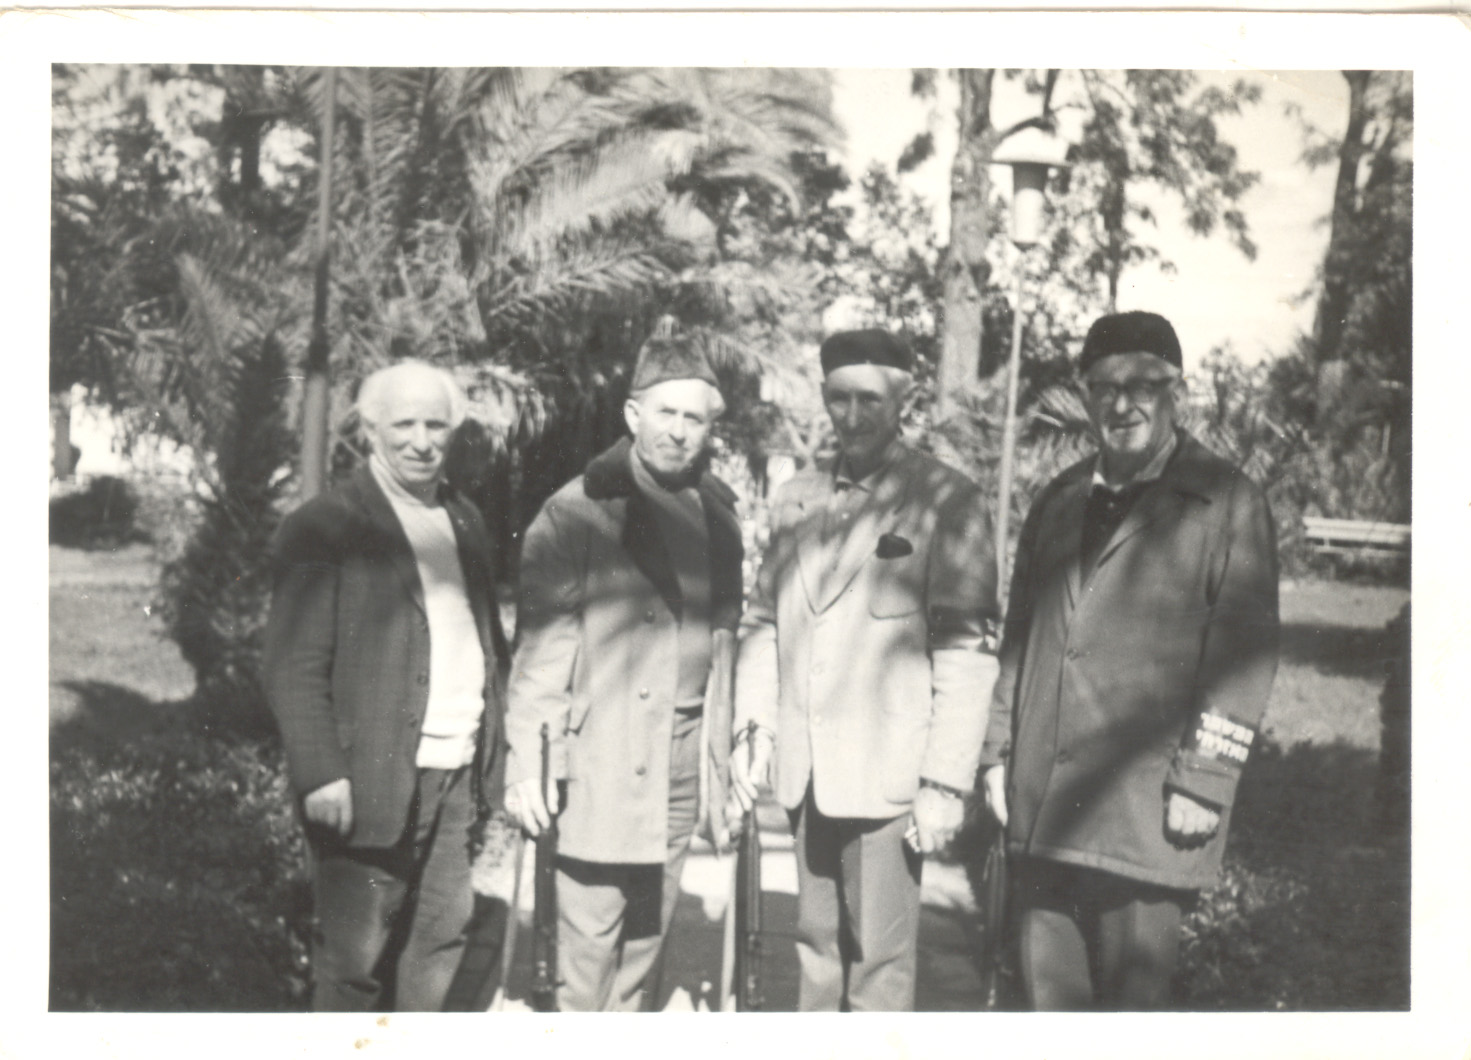 מימין לשמאל - בנימין גולדברג, אברהם בנימינוביץ, אלכסנדר הרפז וציפמן בשמירה במשמר האזרחי ברעננה. מרץ 1975